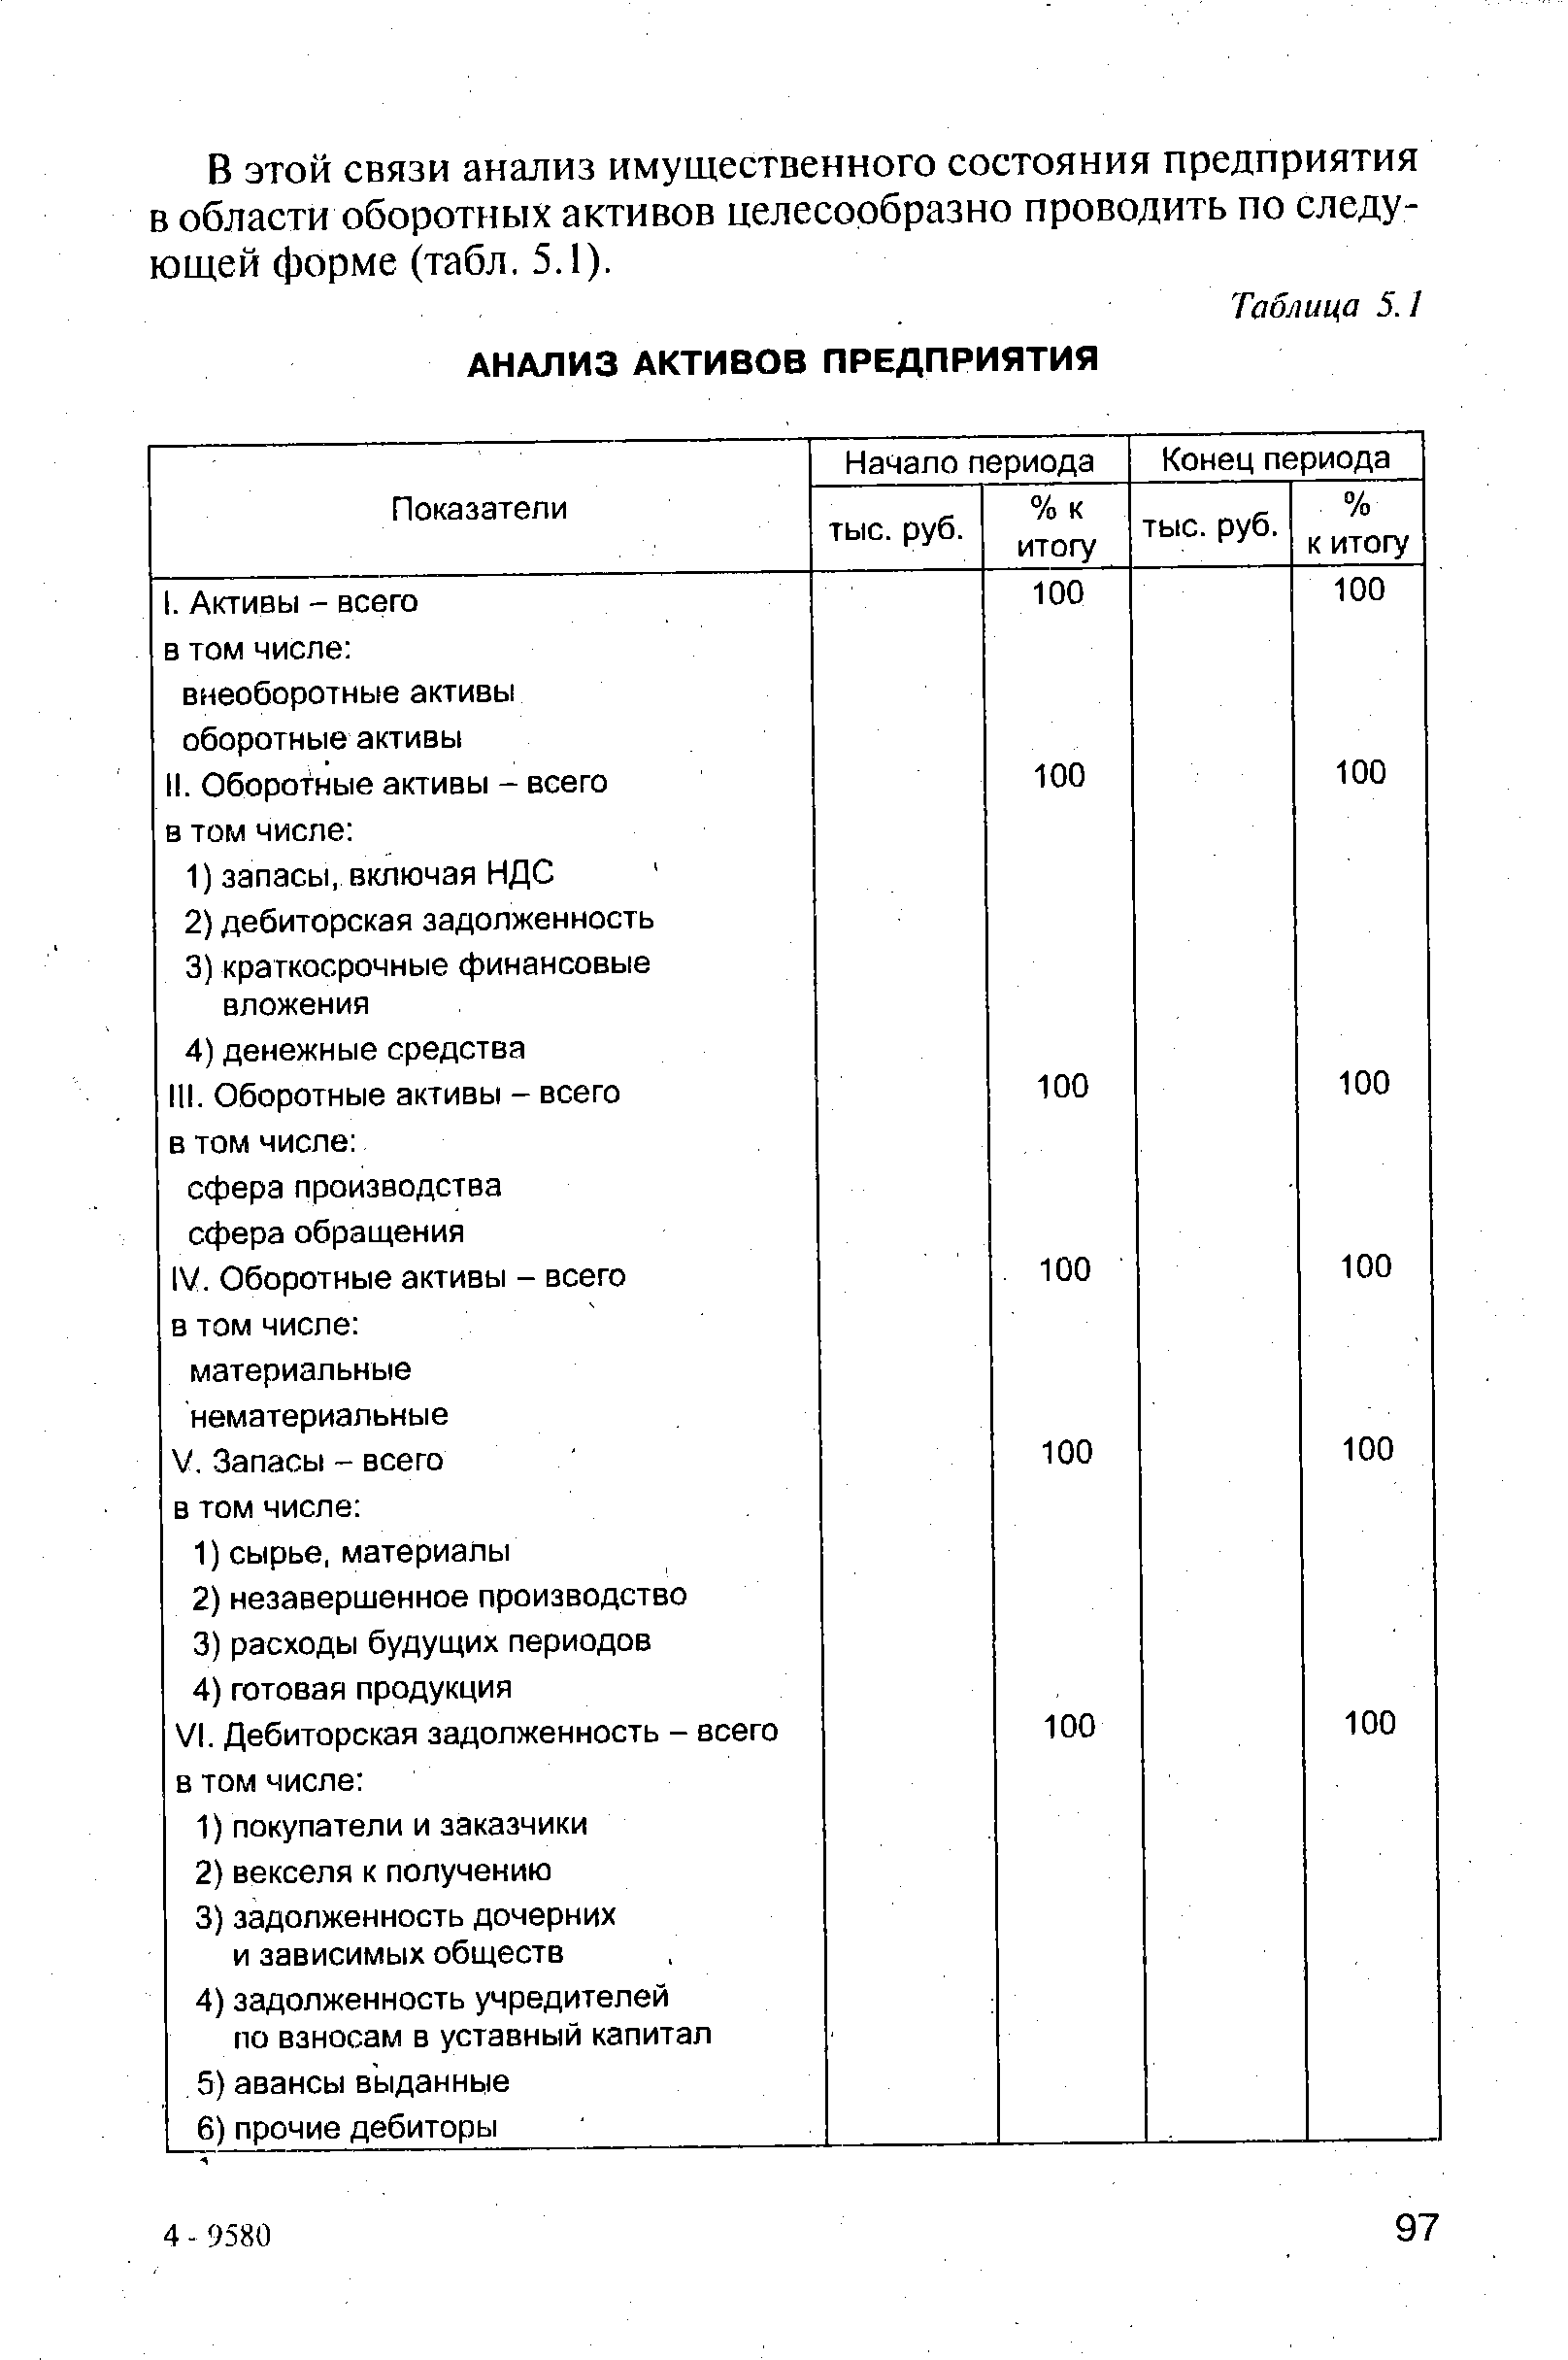 Таблица 5.1 АНАЛИЗ АКТИВОВ ПРЕДПРИЯТИЯ
